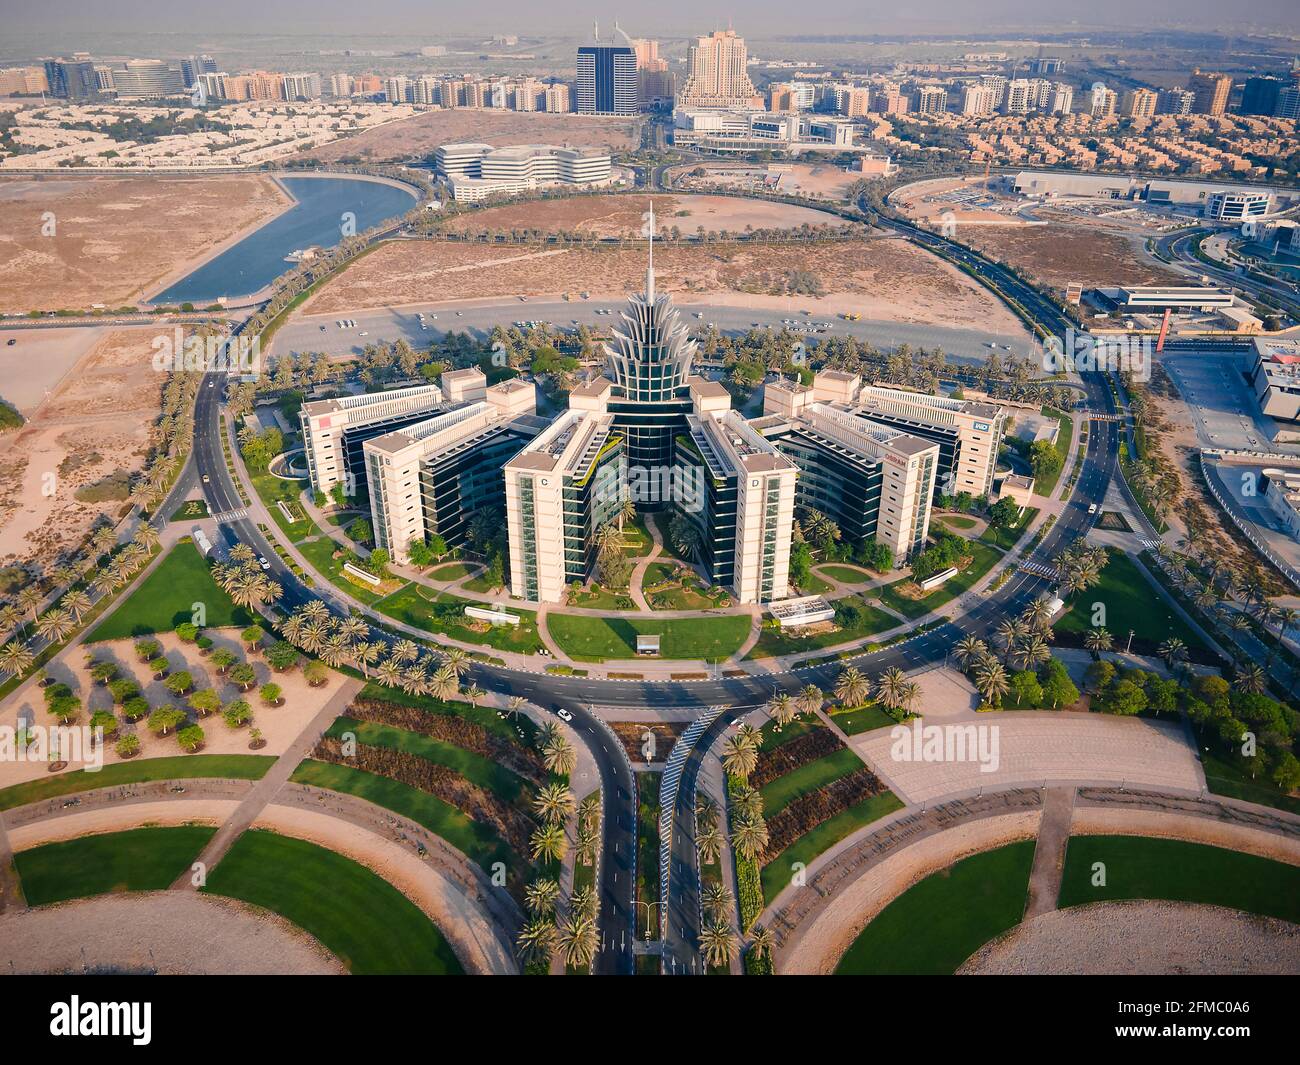 Dubai, Emiratos Árabes Unidos - 5 de mayo de 2021: Dubai Silicon Oasis parque tecnológico, zona residencial y zona libre en Dubai emirate suburbios en el árabe unido Foto de stock